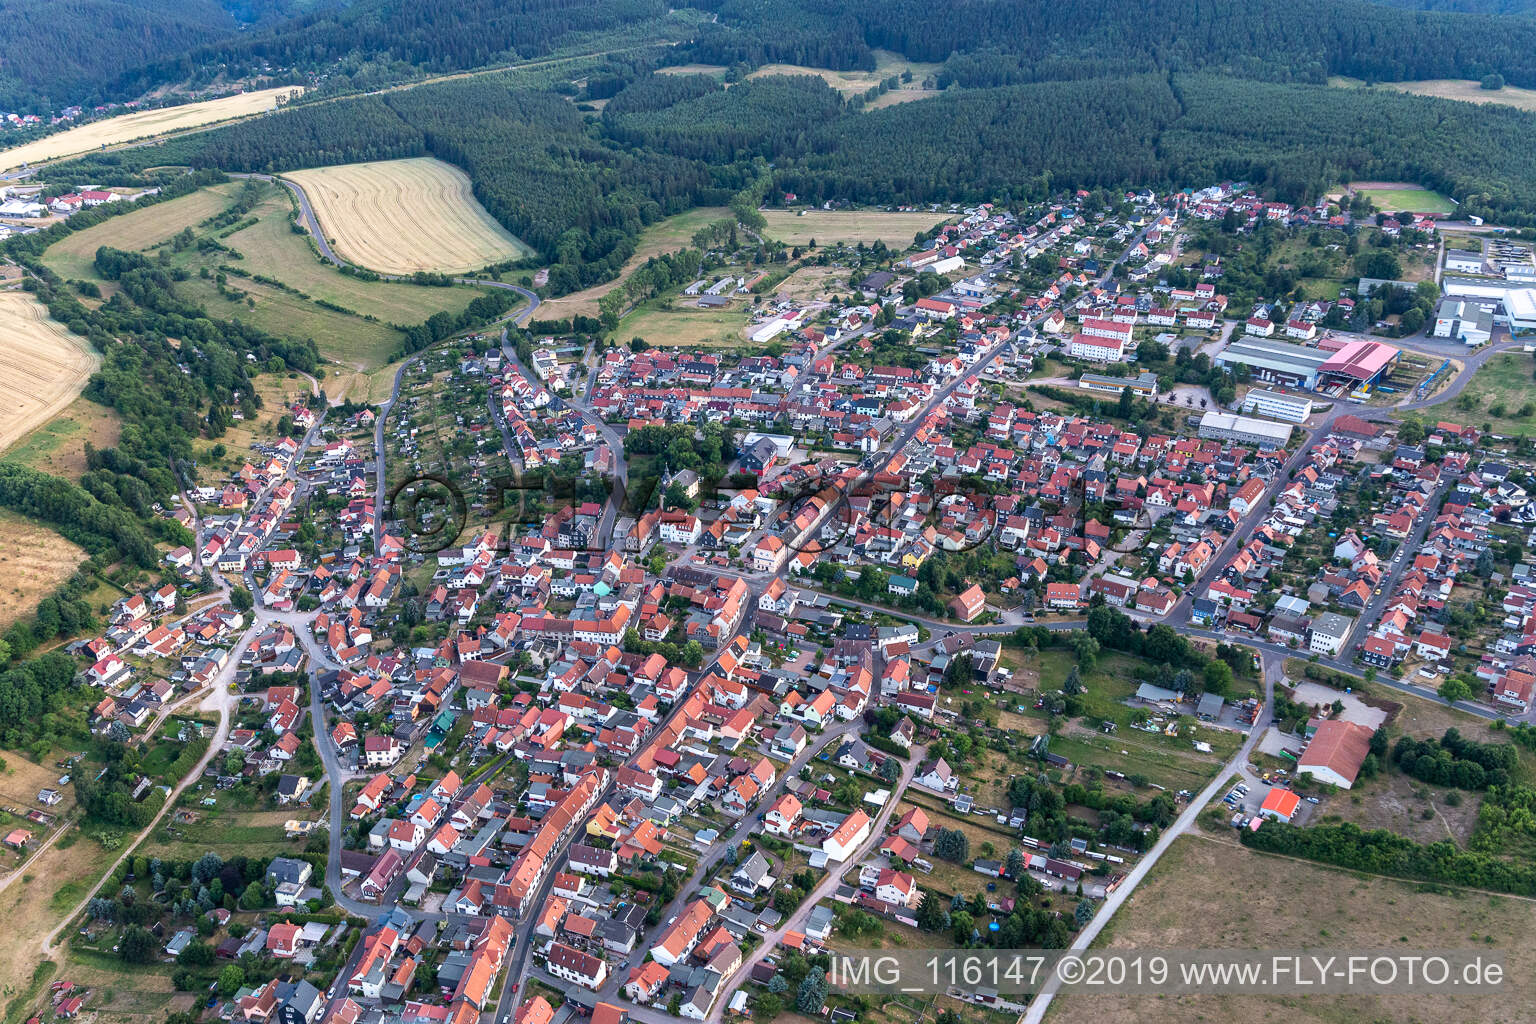 Vue aérienne de Geschwenda dans le département Thuringe, Allemagne